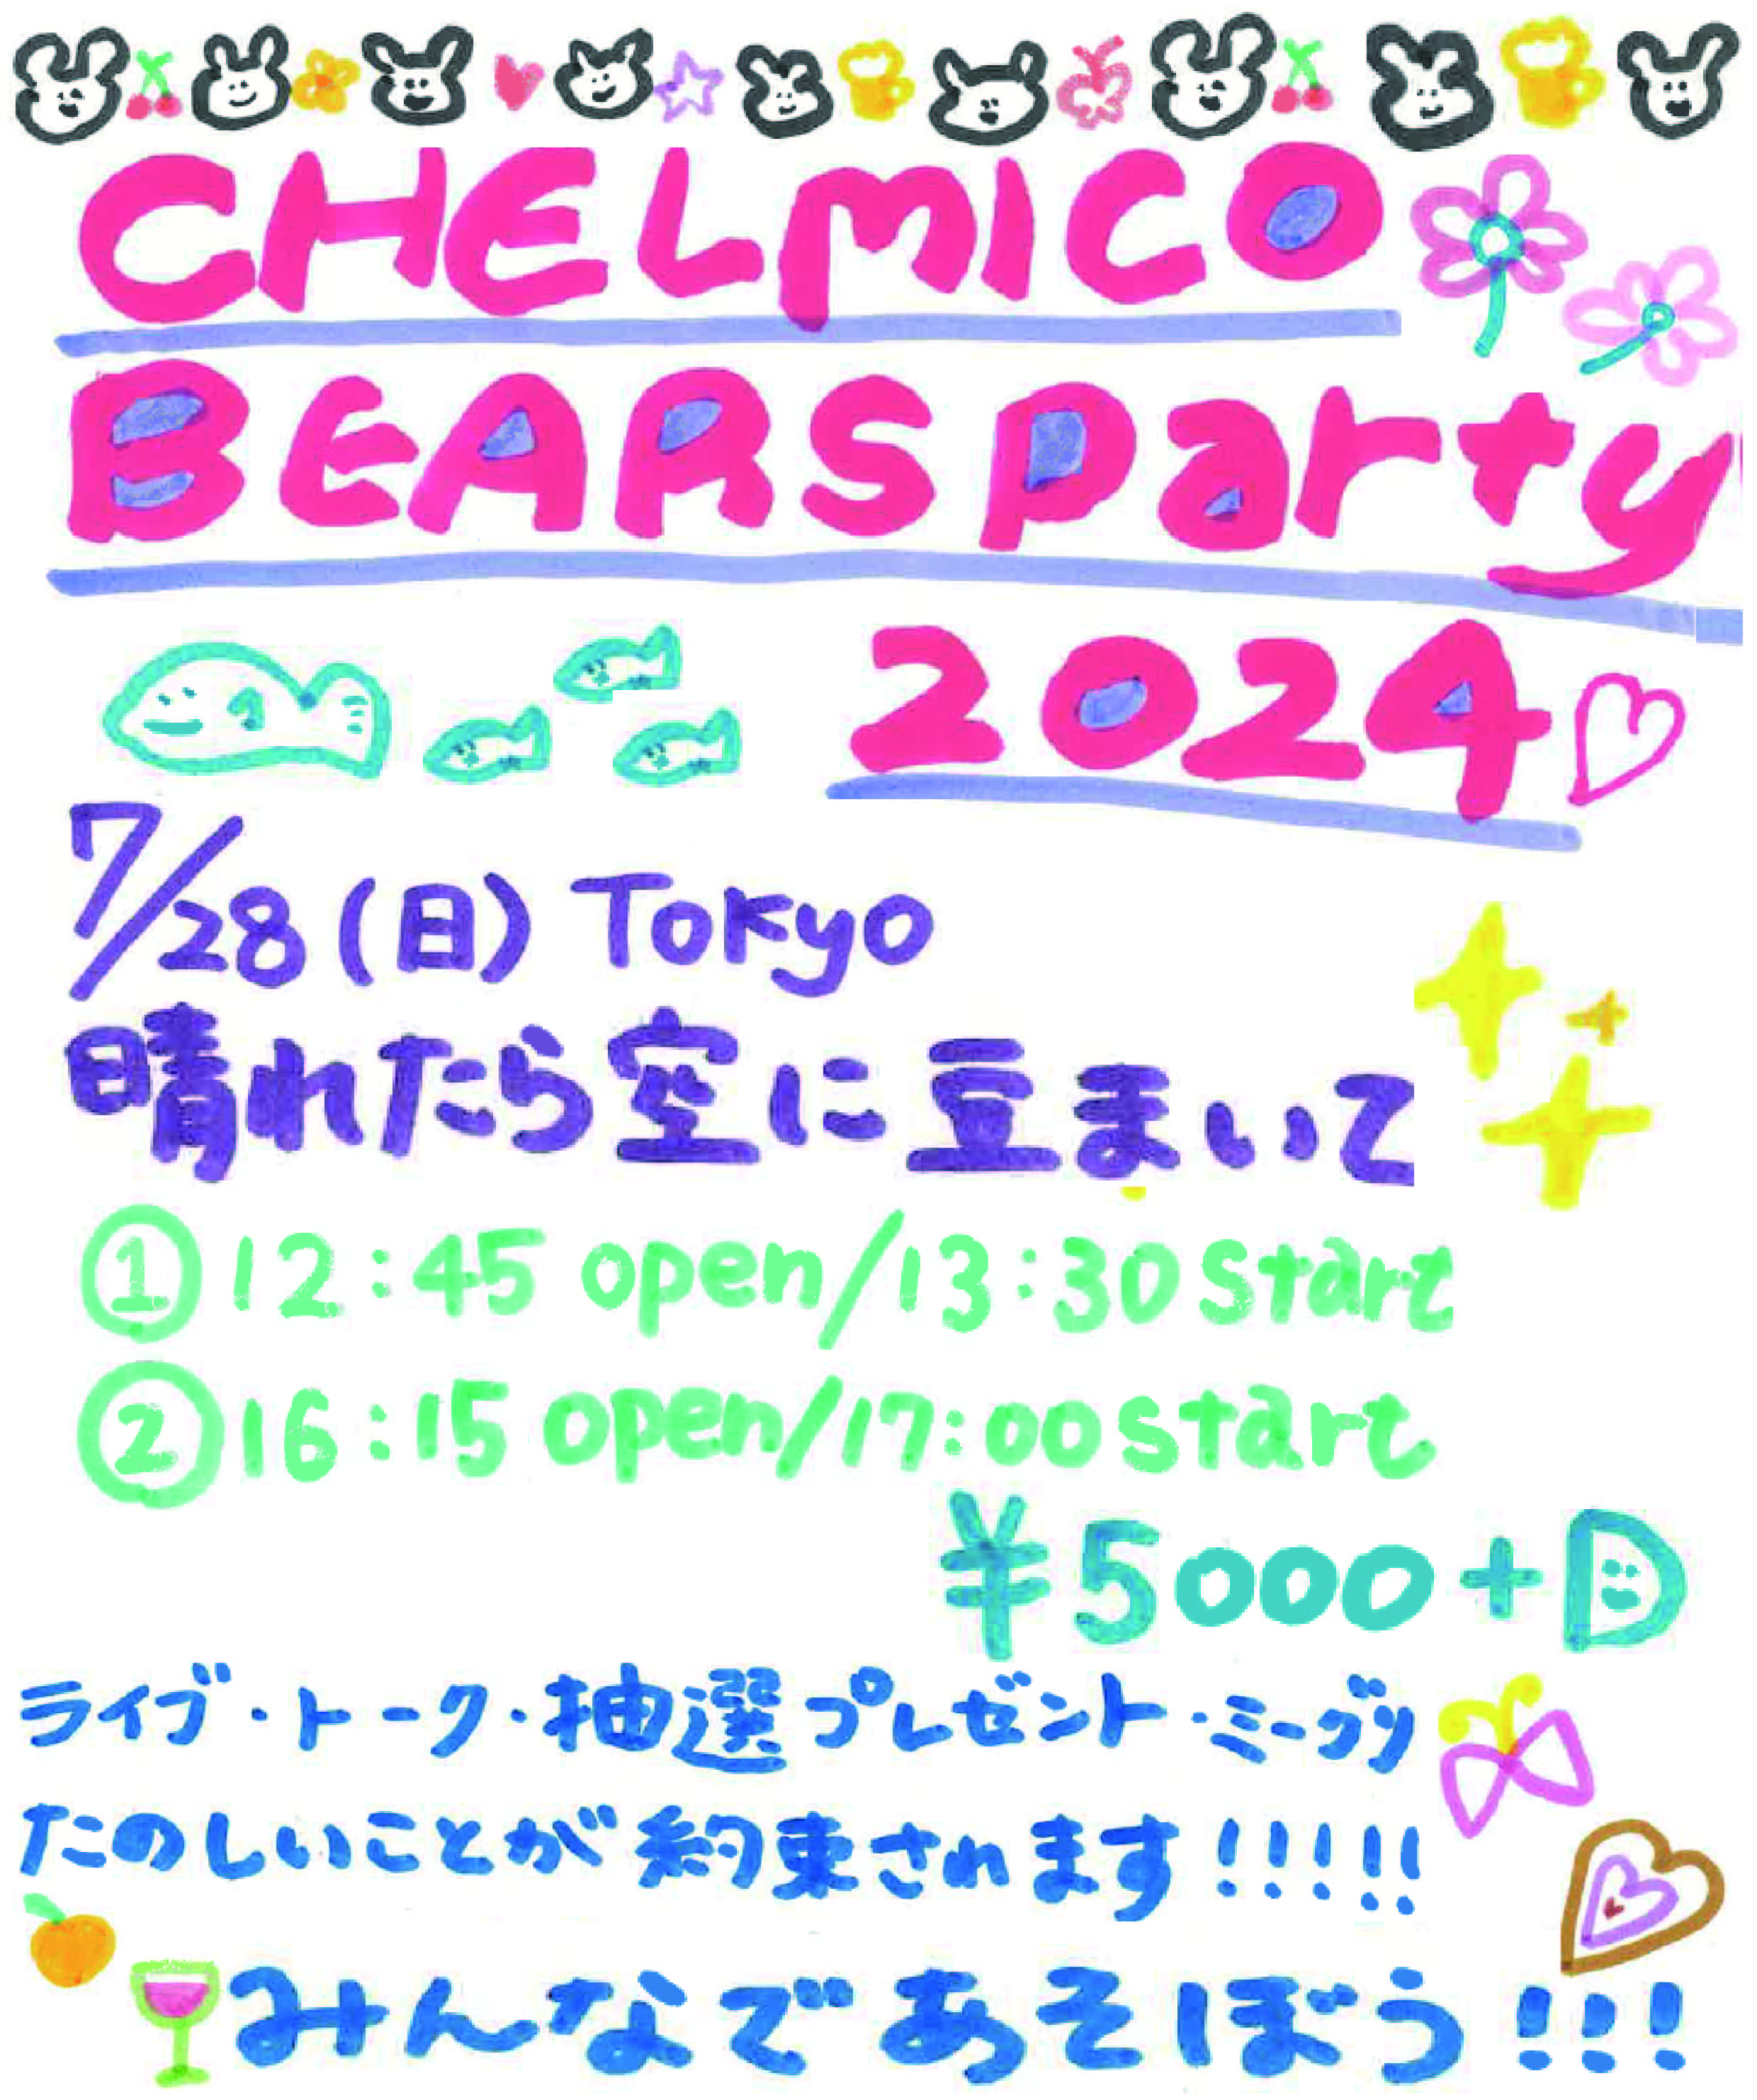 7/28(日)初のFCイベント「chelmico bears party 2024」開催決定！